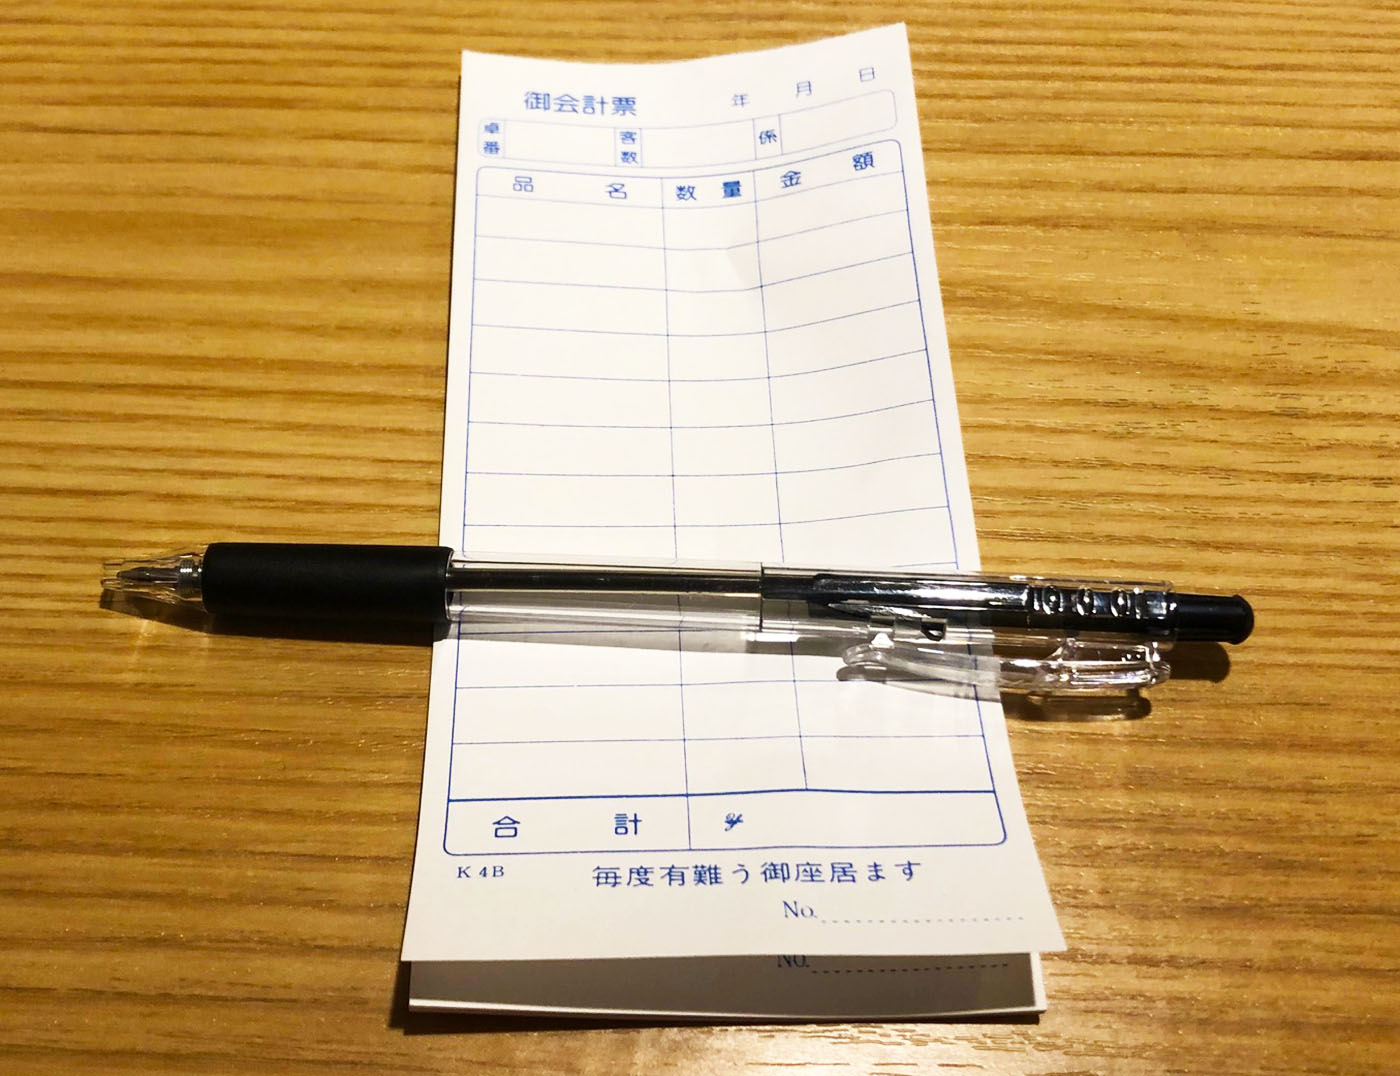 浦和西口・SKEWER（スキューワー）のランチは自分で伝票に記入してオーダー